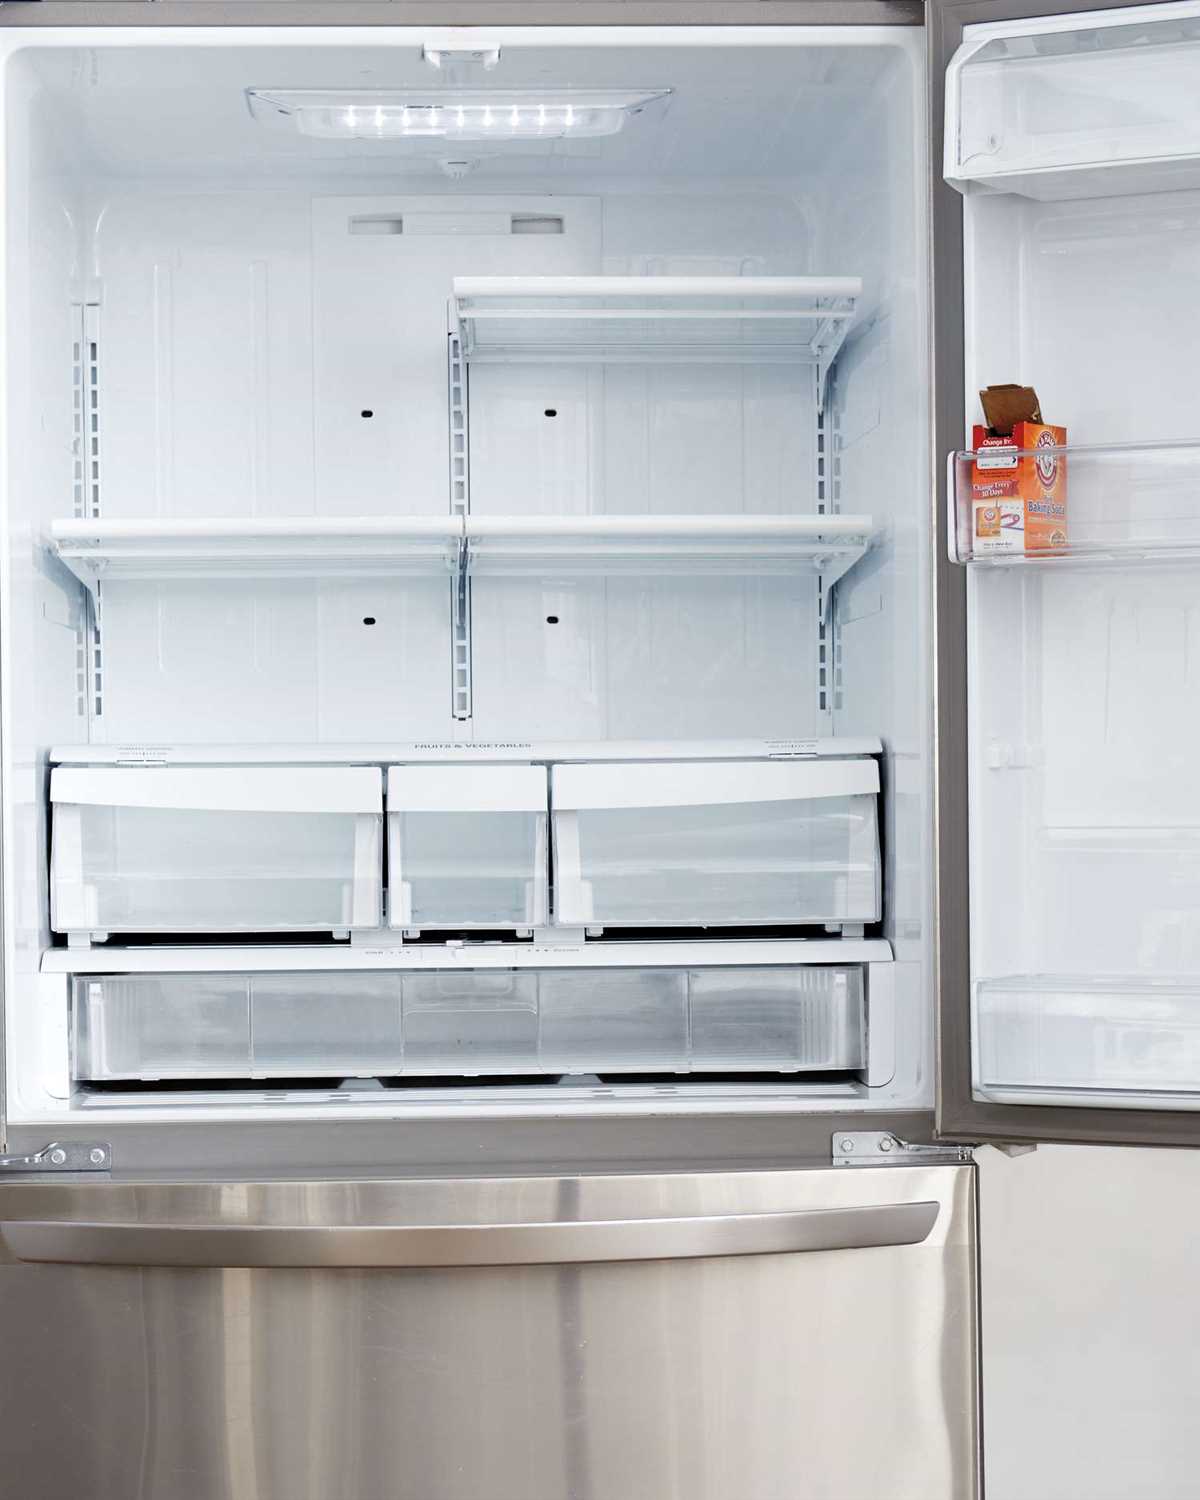 6. Use a refrigerator deodorizer